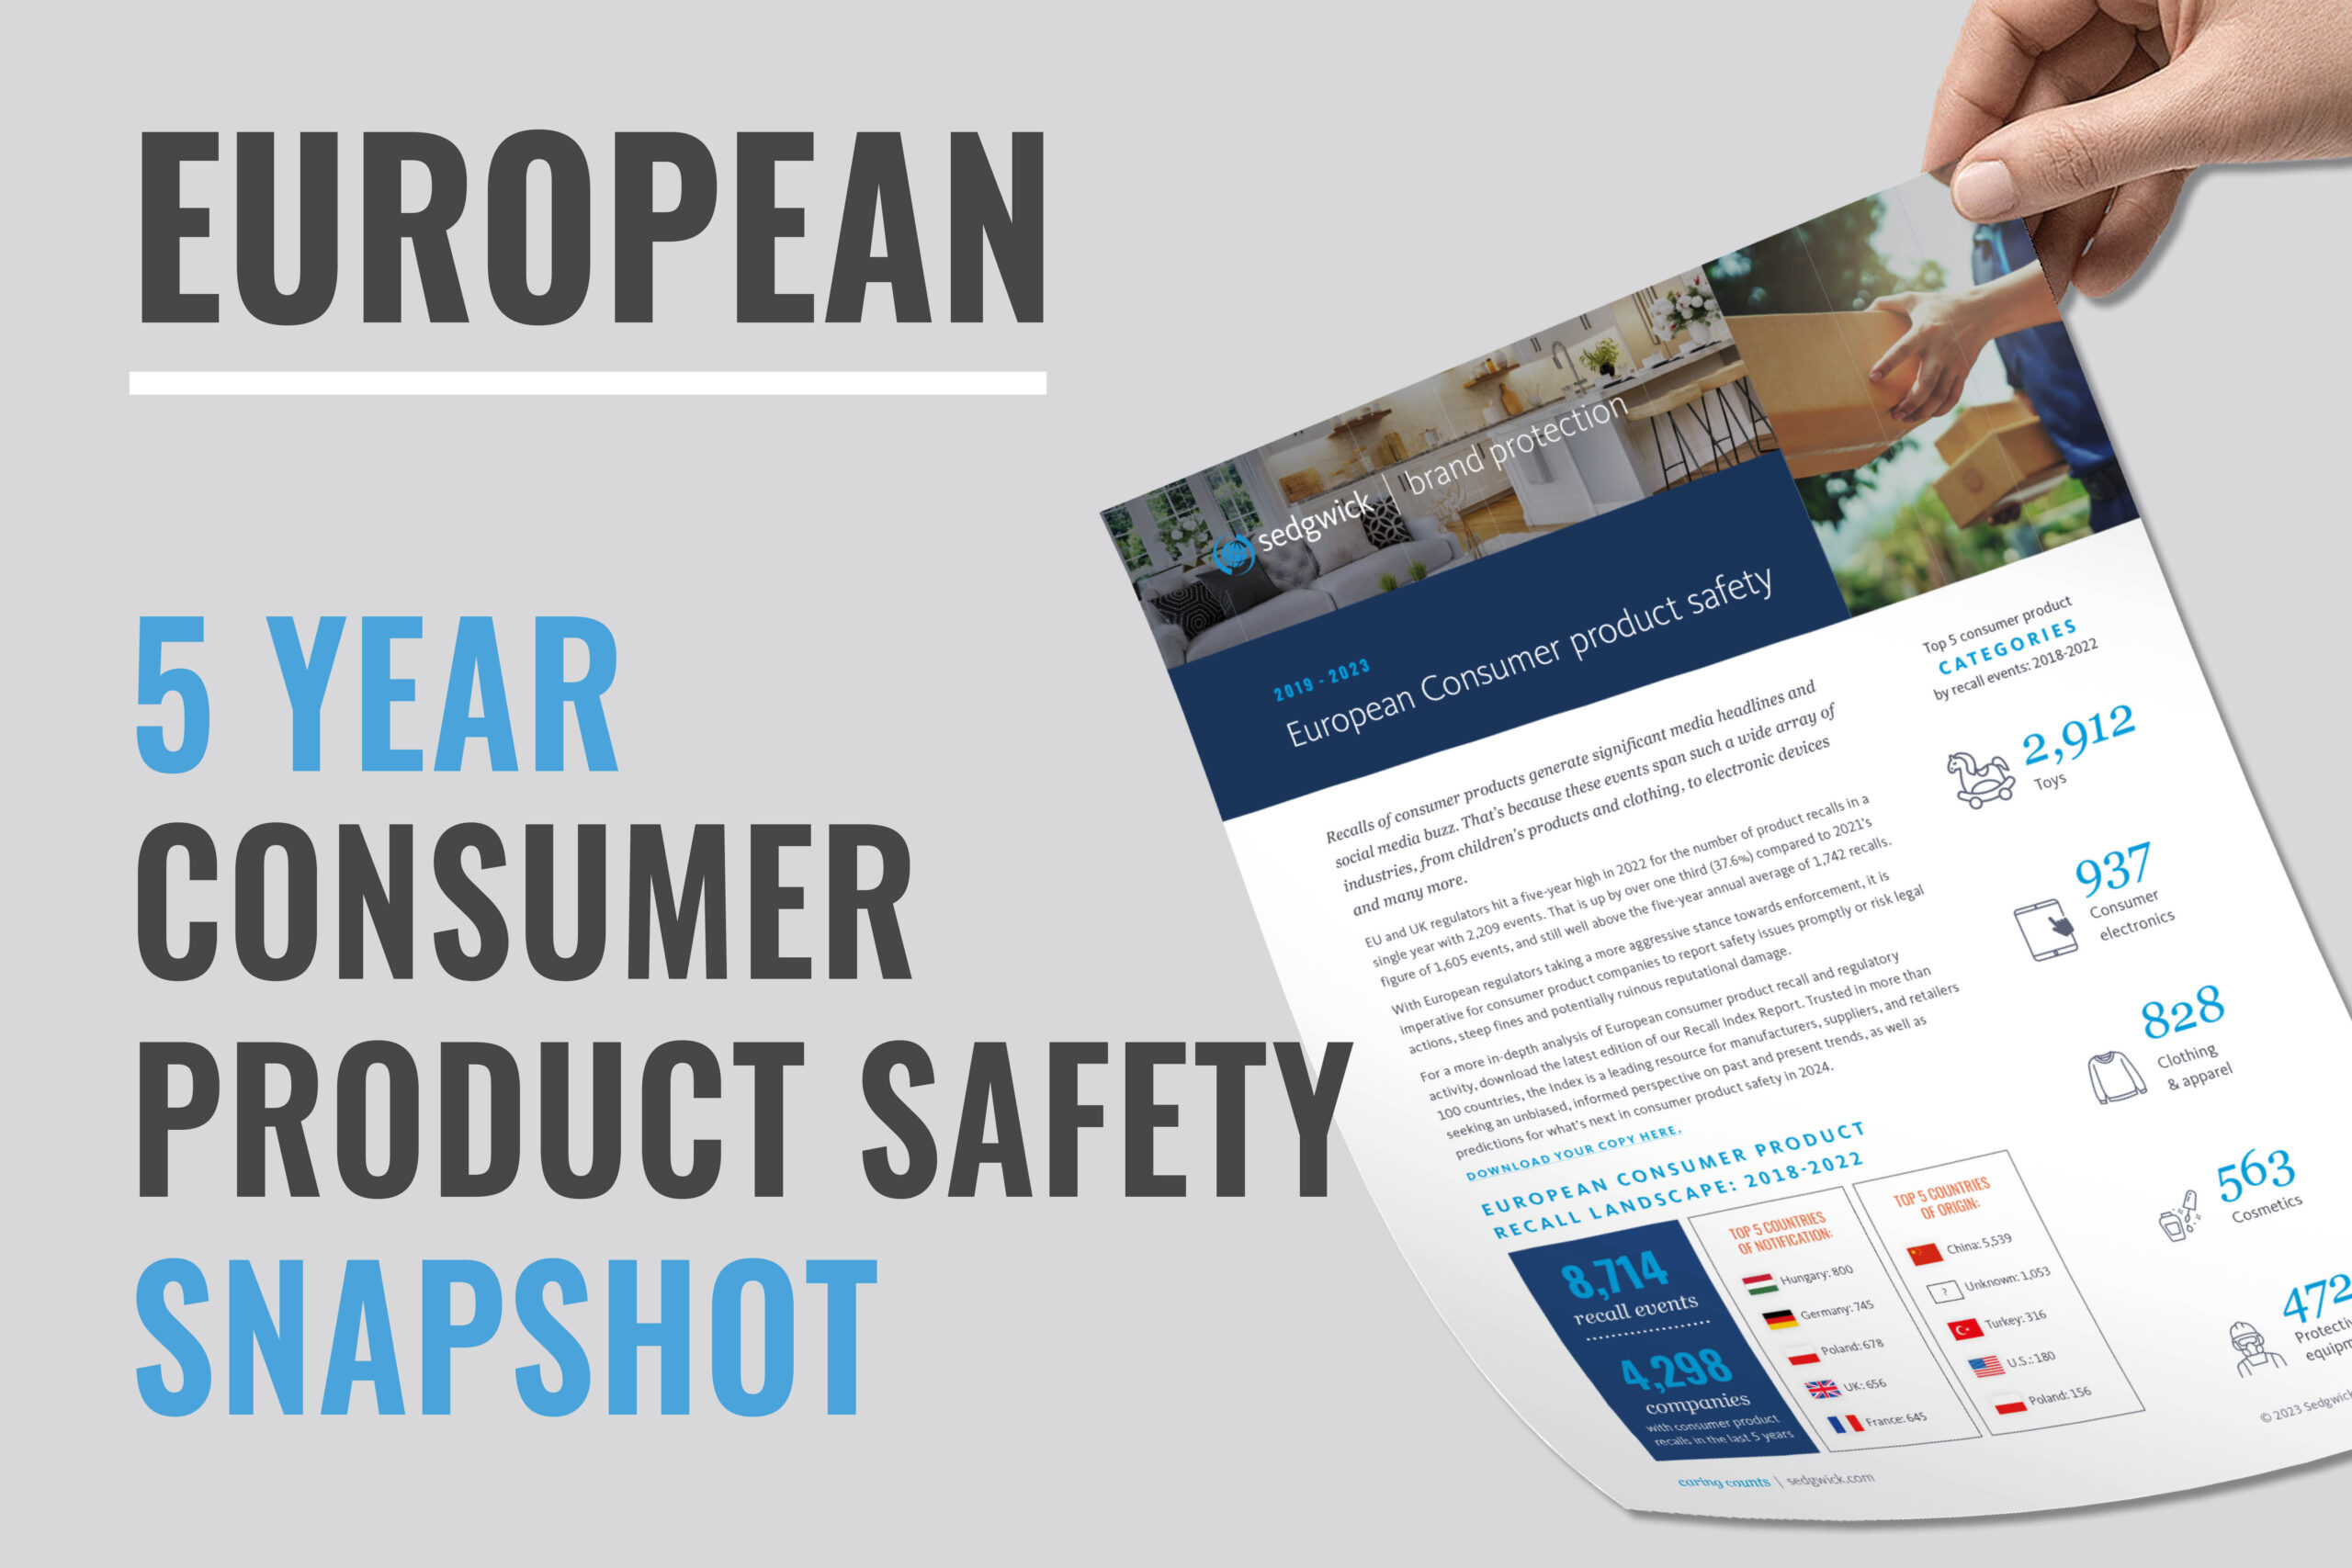 Aperçu de la sécurité des produits de consommation et des rappels en Europe - Télécharger maintenant